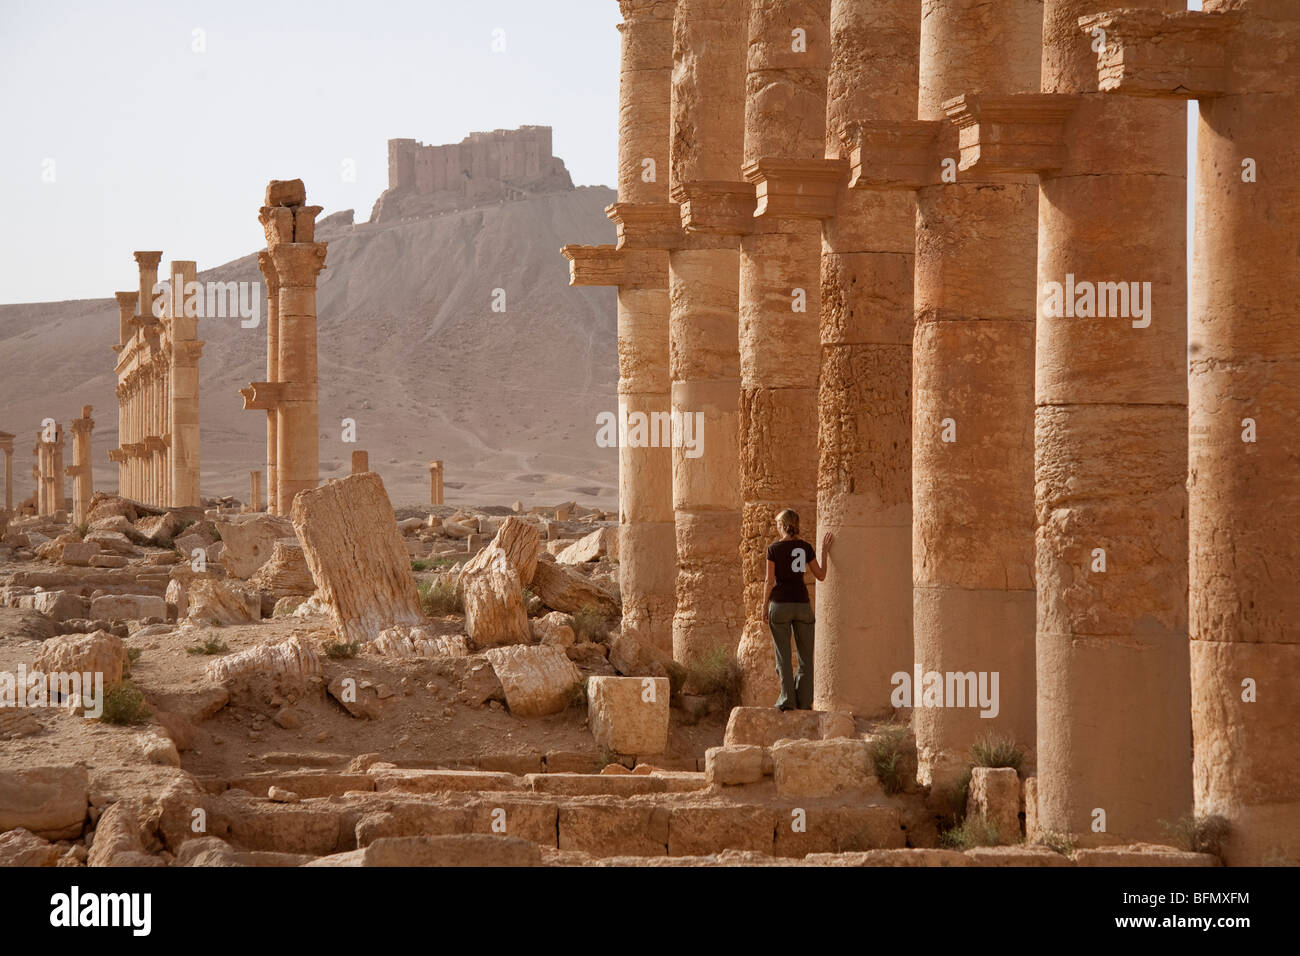 La Syrie, Palmyre. Le tourisme figure parmi les anciennes ruines de la ville de la reine Zénobie à Palmyre.(MR) Banque D'Images